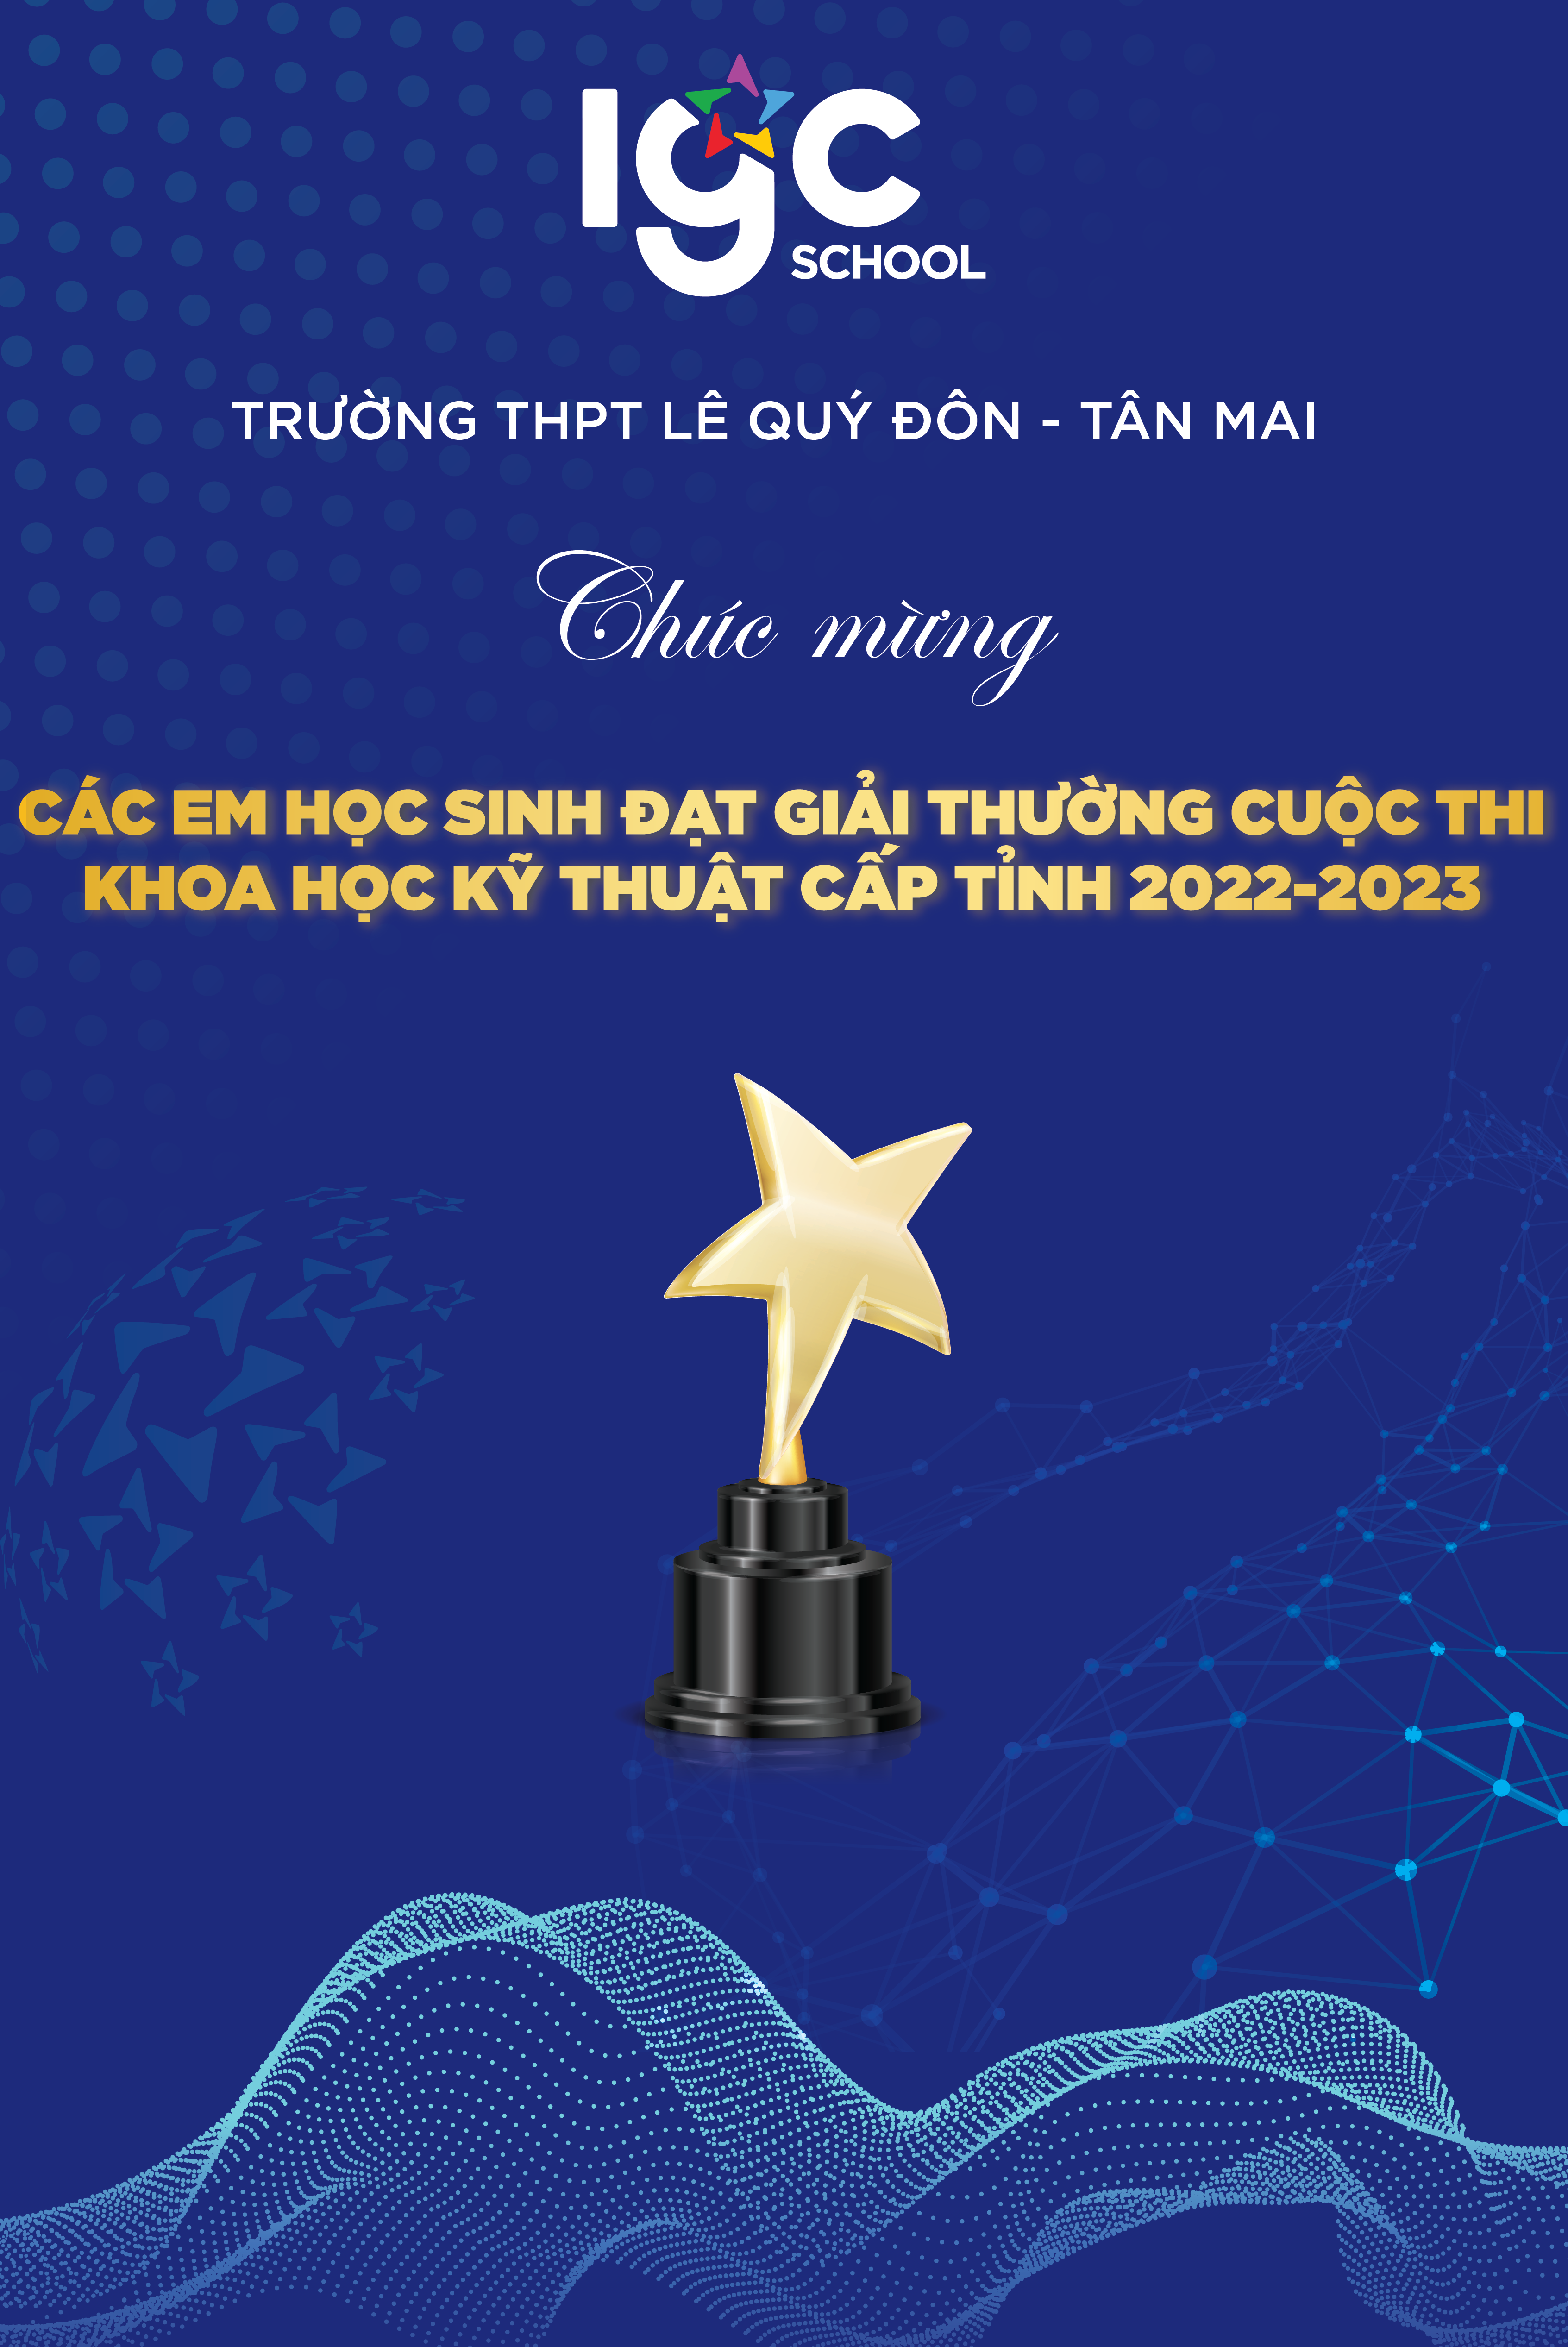 💥Trường THPT Lê Quý Đôn - Tân Mai chúc mừng 3️⃣ dự án đạt giải trong Cuộc thi Khoa học kỹ thuật tỉnh Đồng Nai năm học 2022-2023